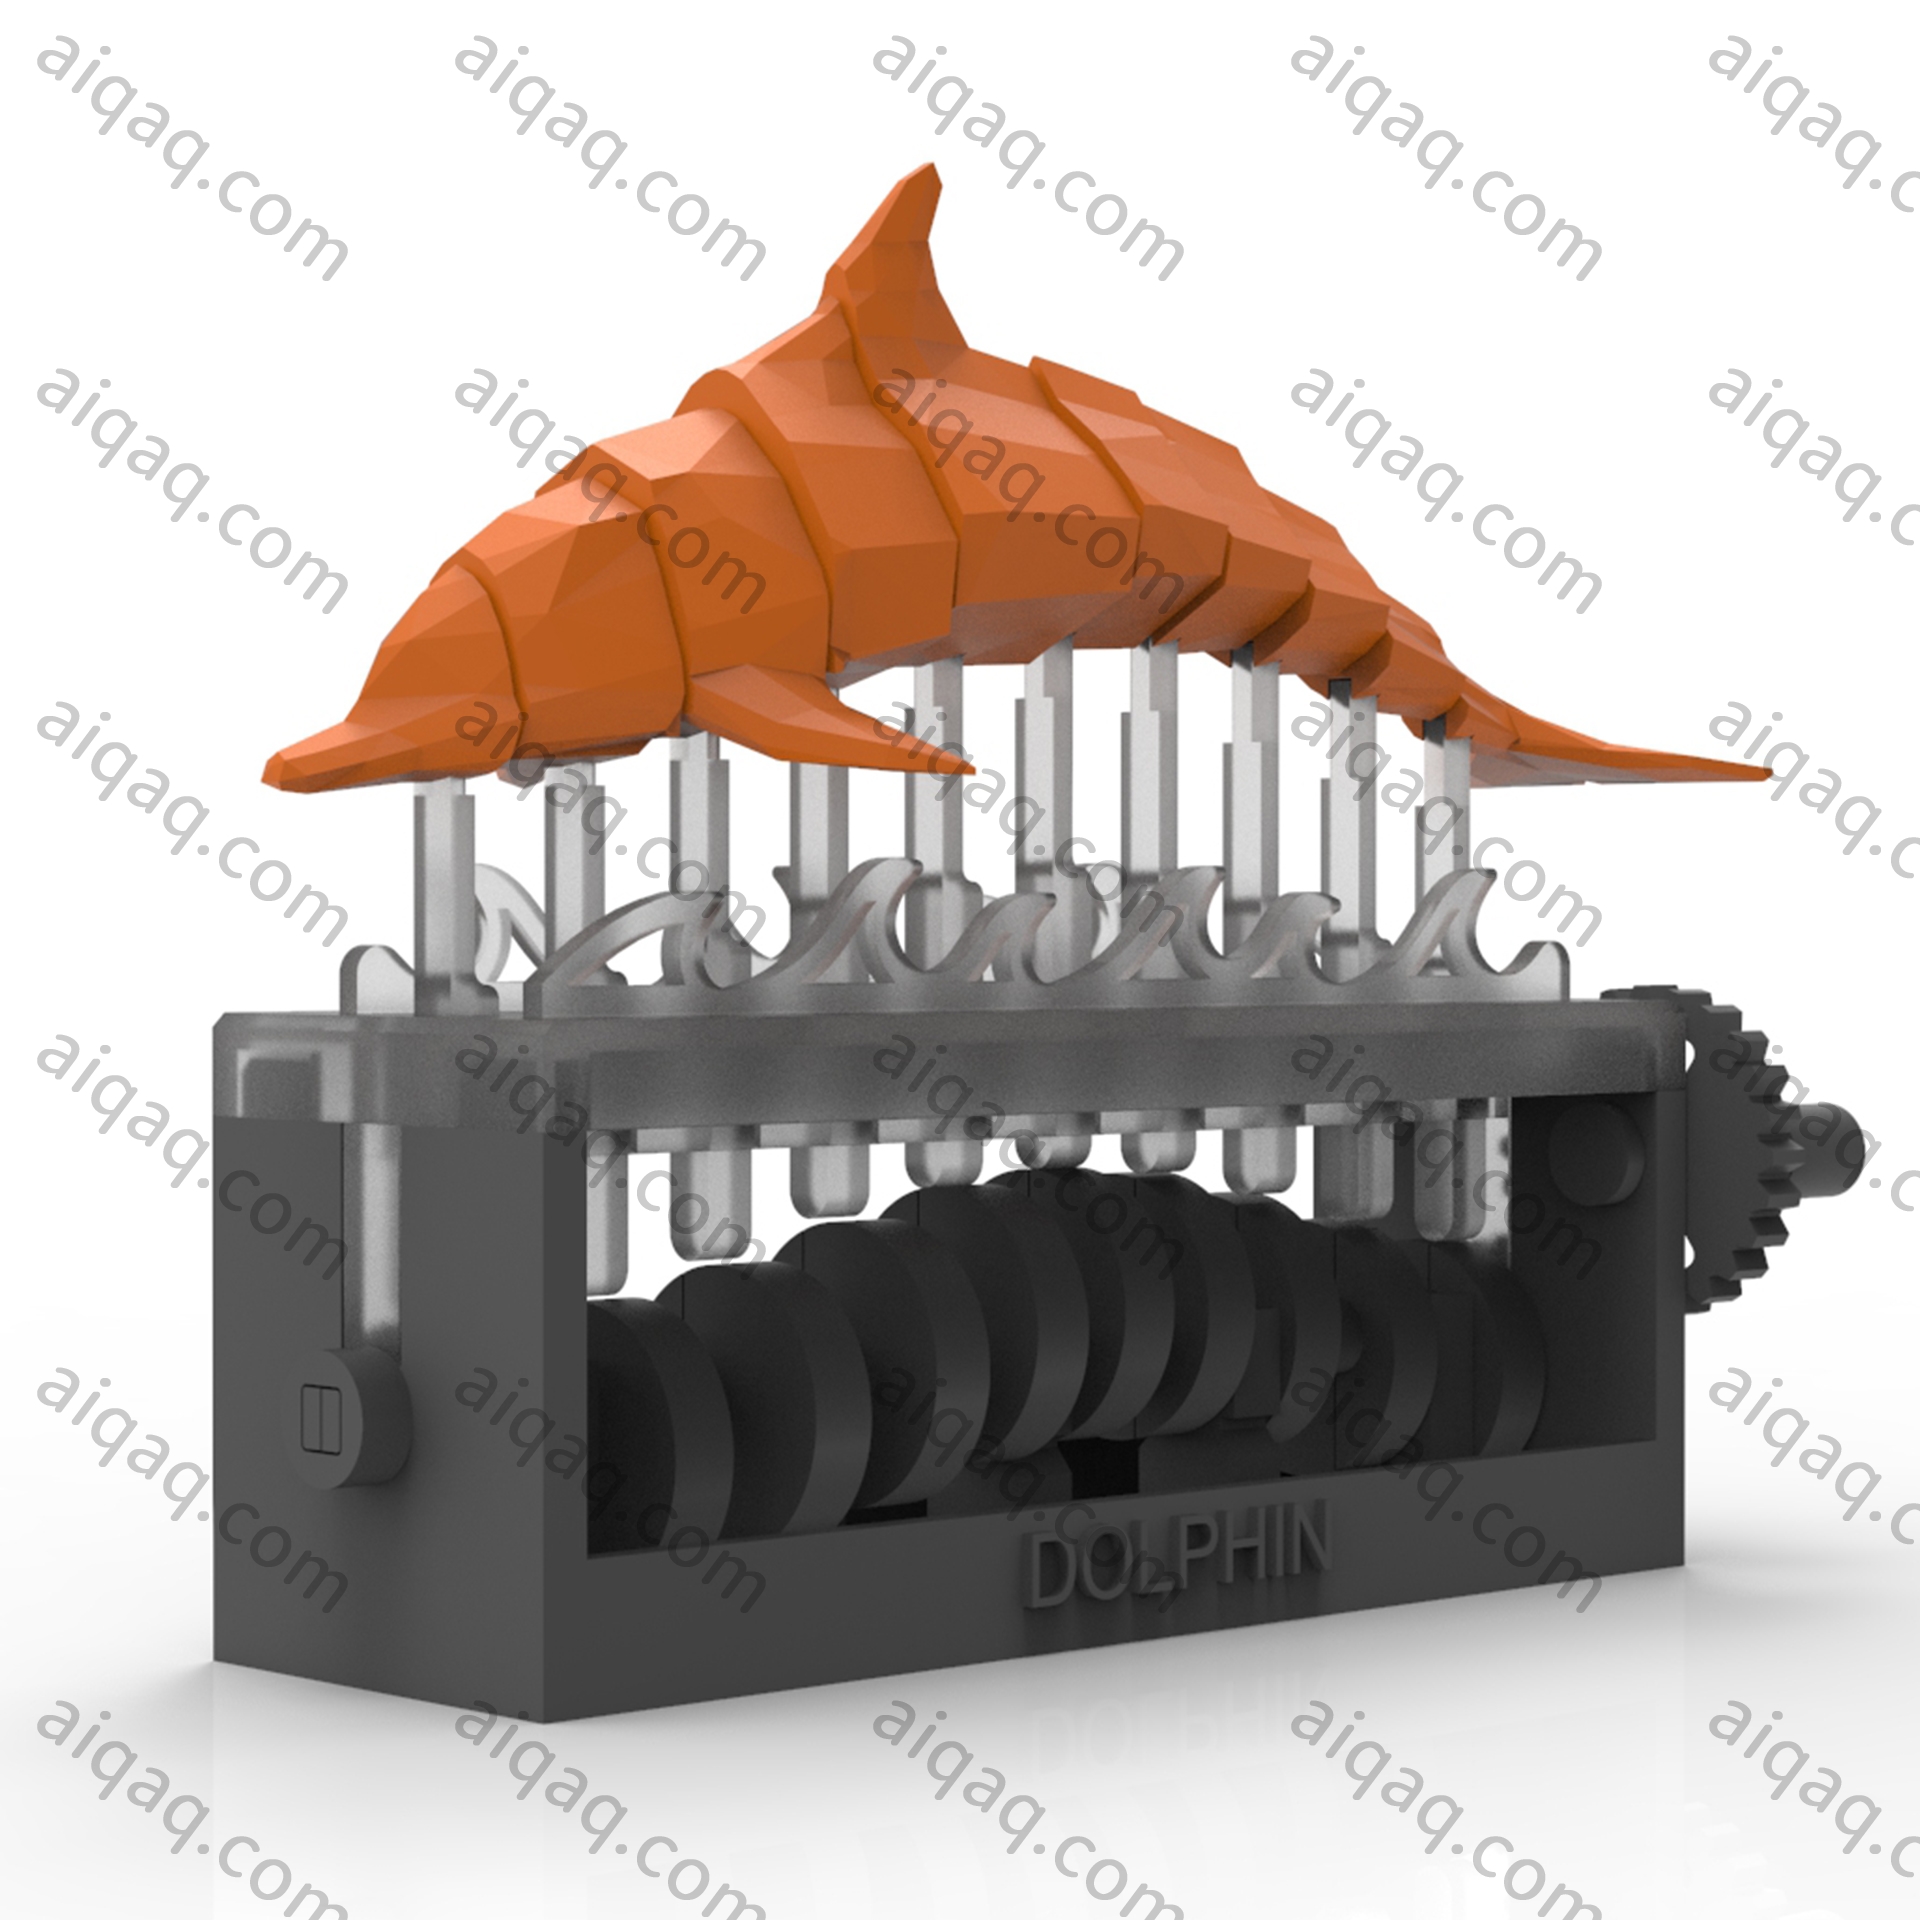 游动的海豚-STL下载网_3D打印模型网_3D打印机_3D模型库